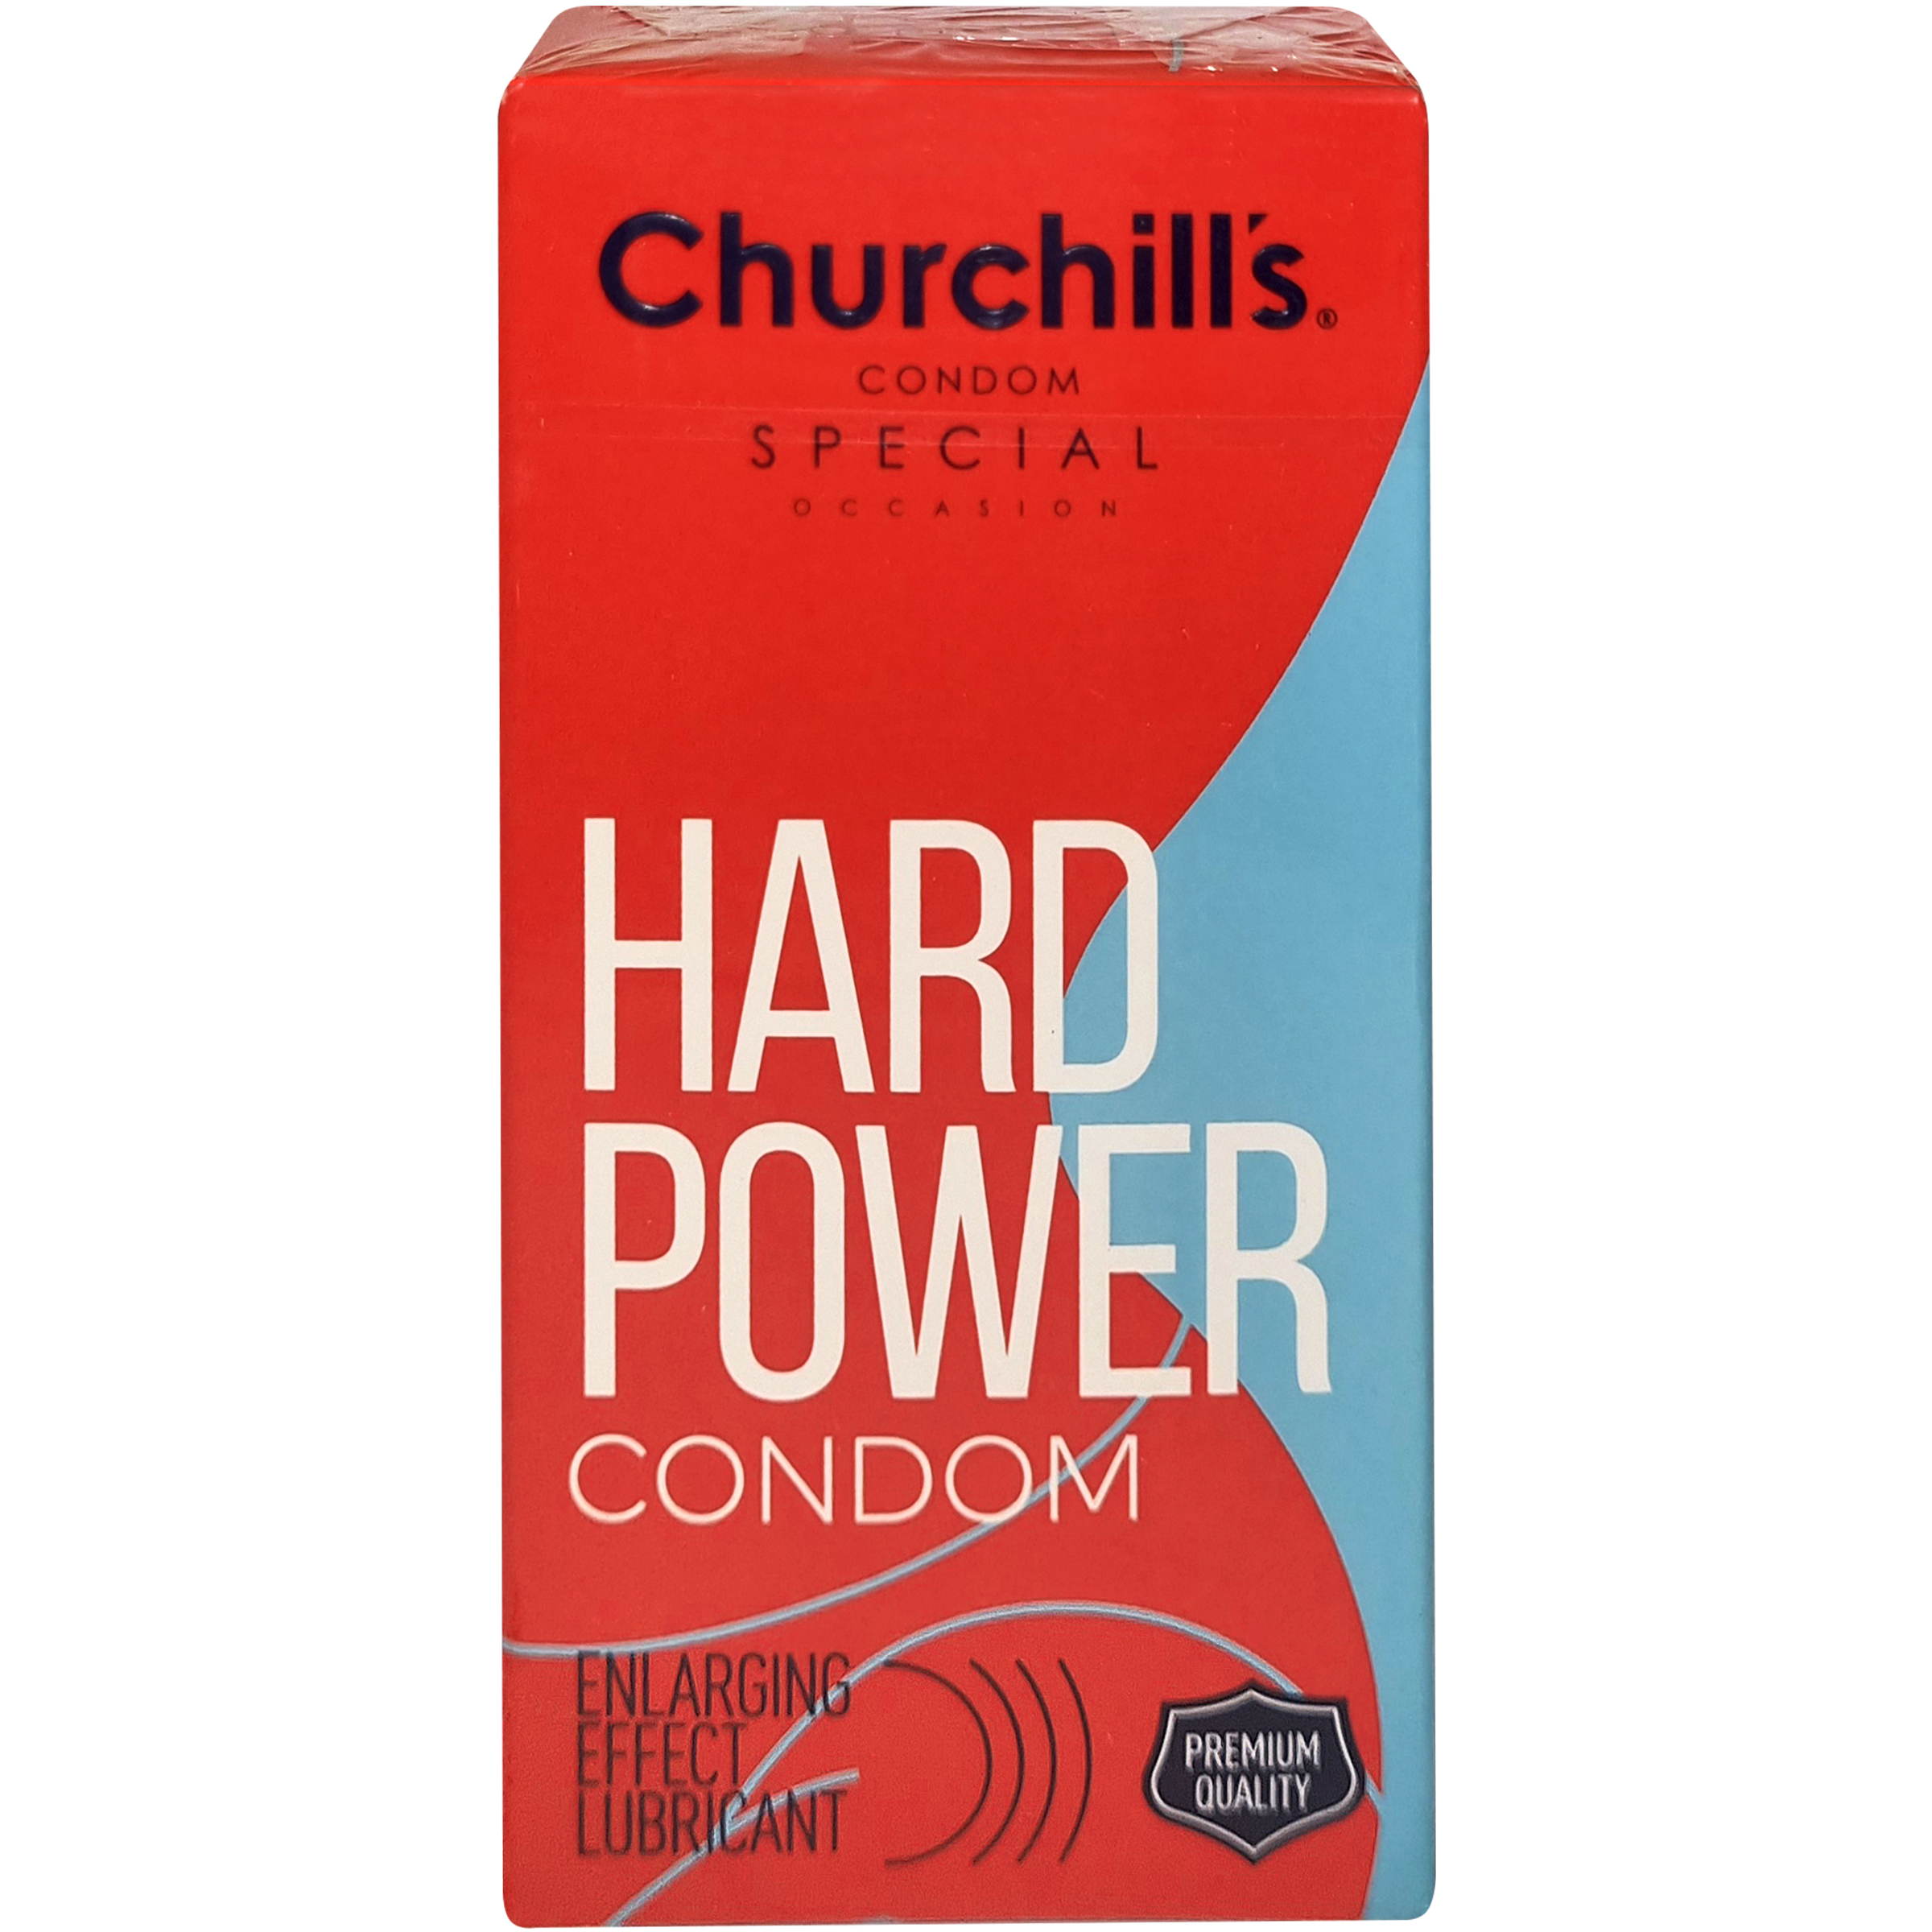 نکته خرید - قیمت روز کاندوم چرچیلز مدل Hard Power بسته 12 عددی خرید